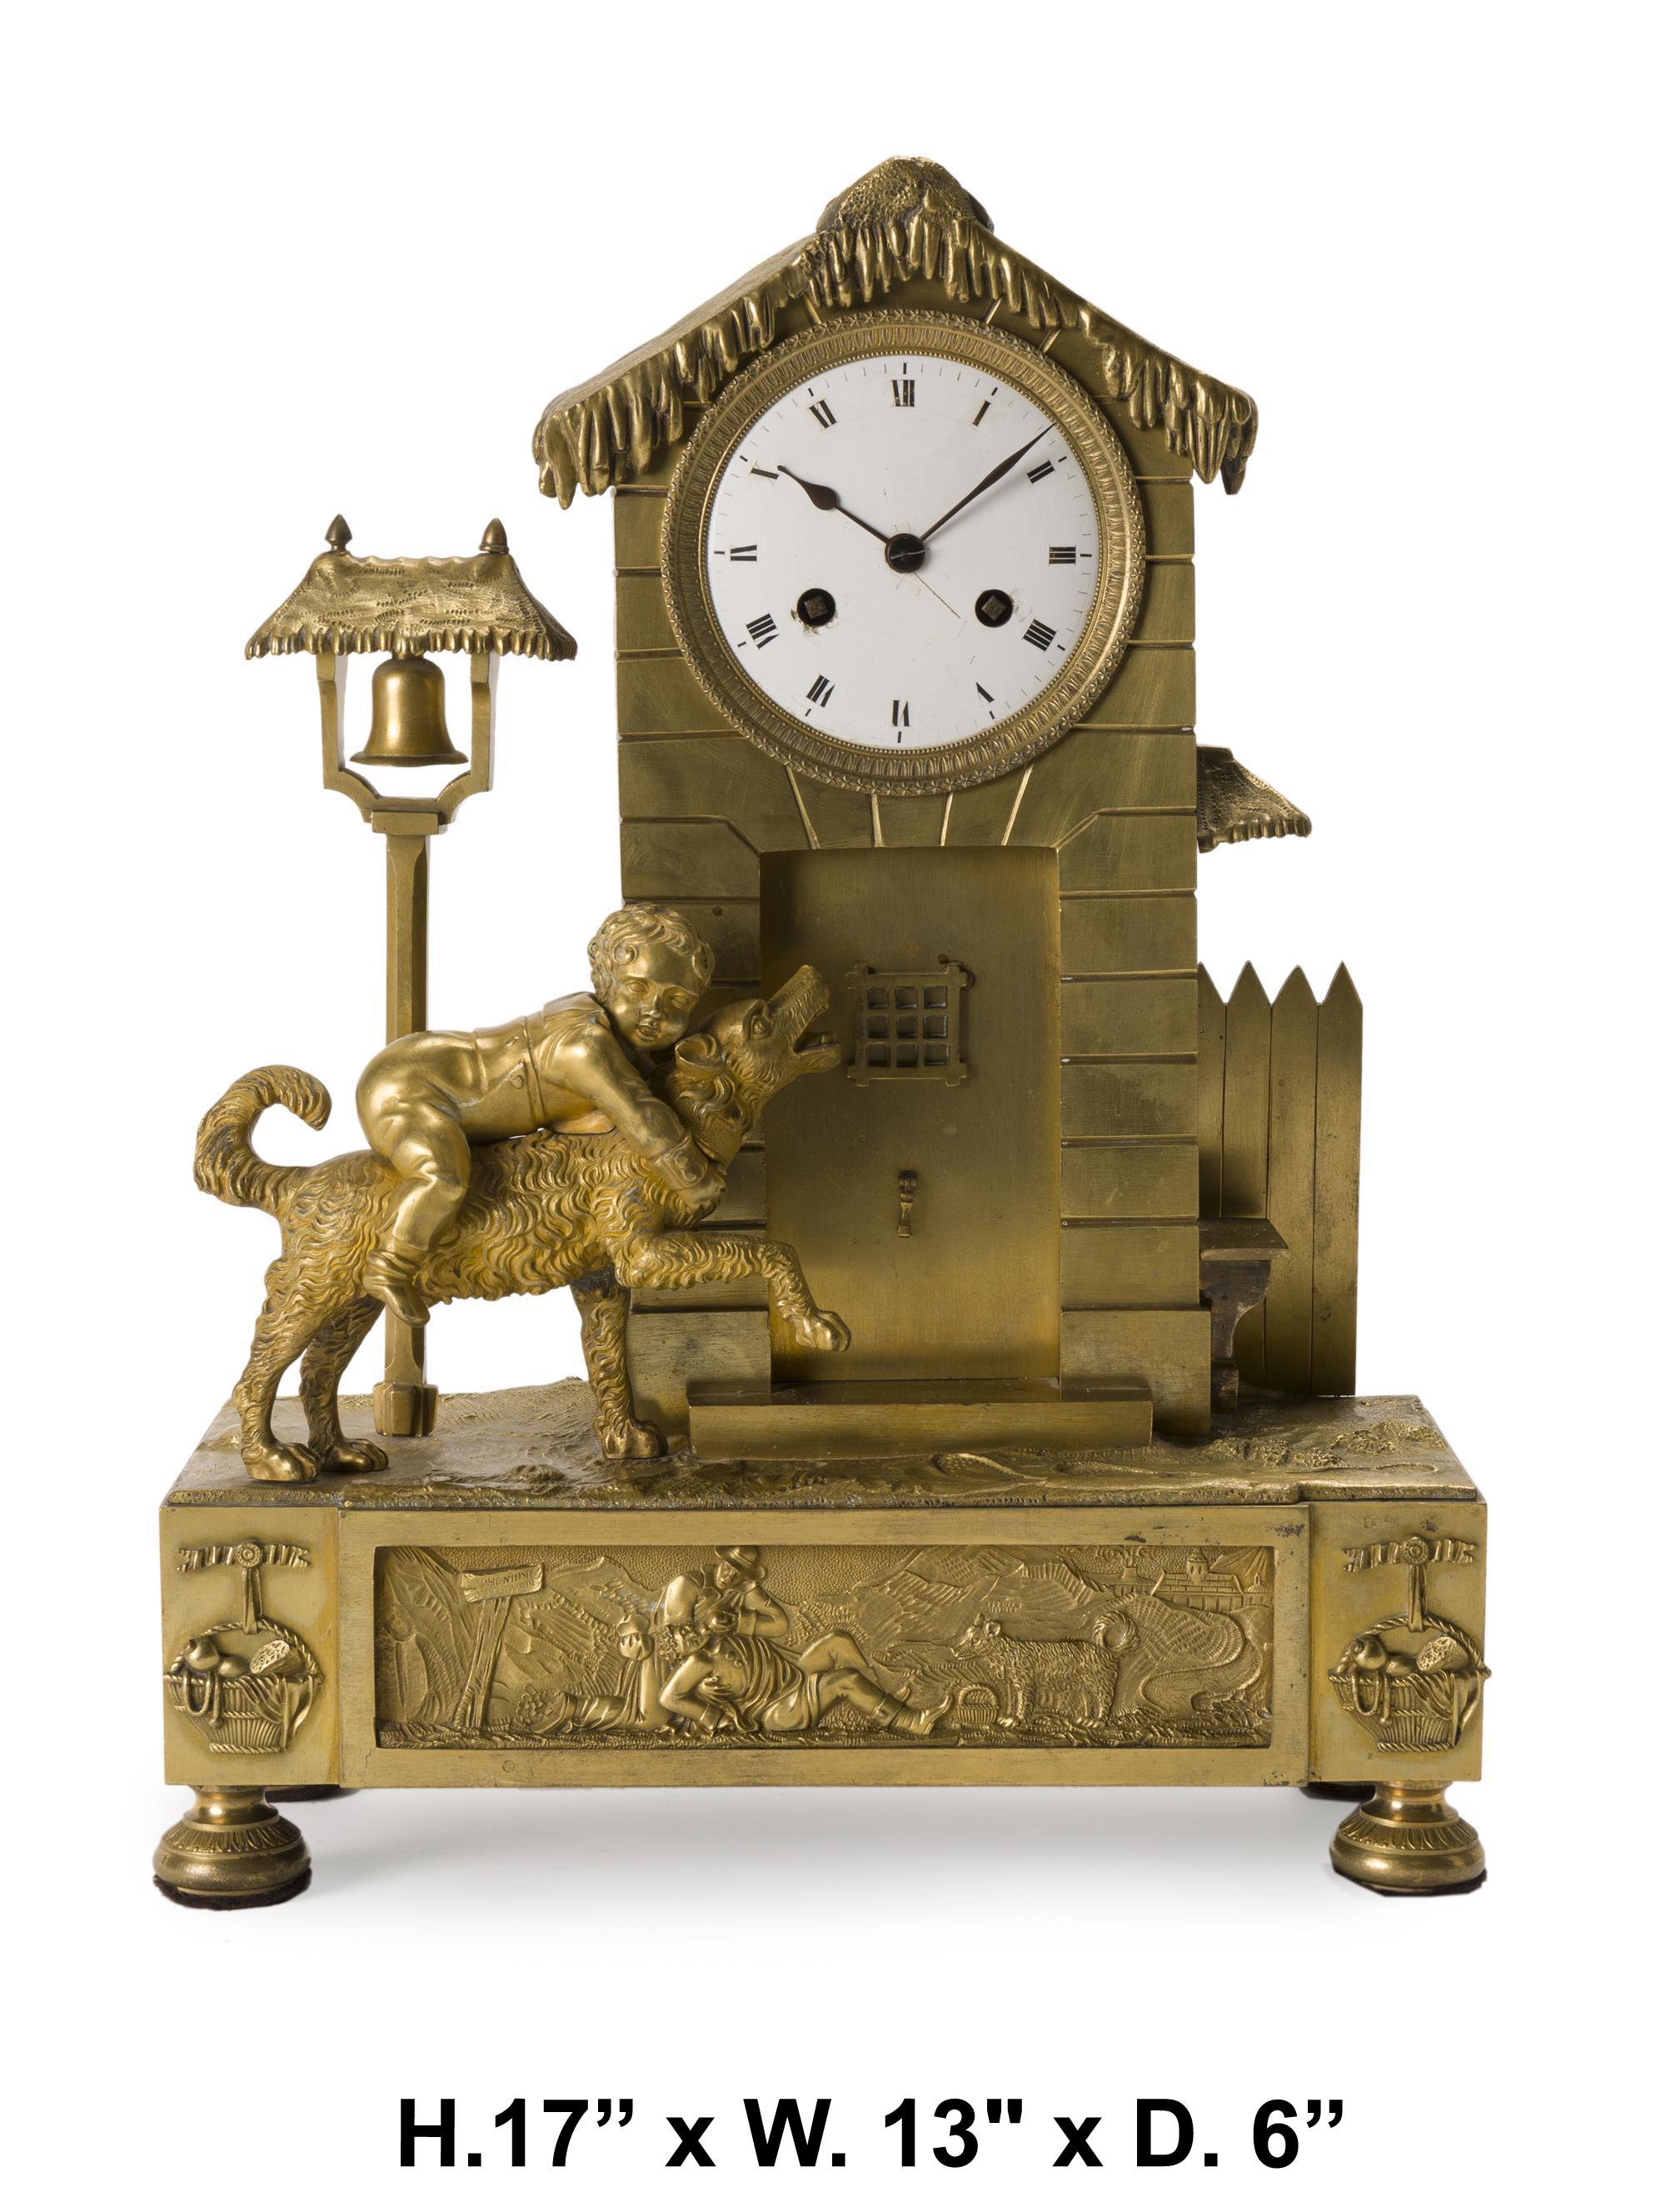 Belle horloge française en bronze doré du 19ème siècle
Apparemment non signé 
Le cadran en porcelaine blanche avec index en chiffres romains, enfermé dans un boîtier en forme de chalet avec une figure d'un garçon chevauchant un chien au-dessus d'une